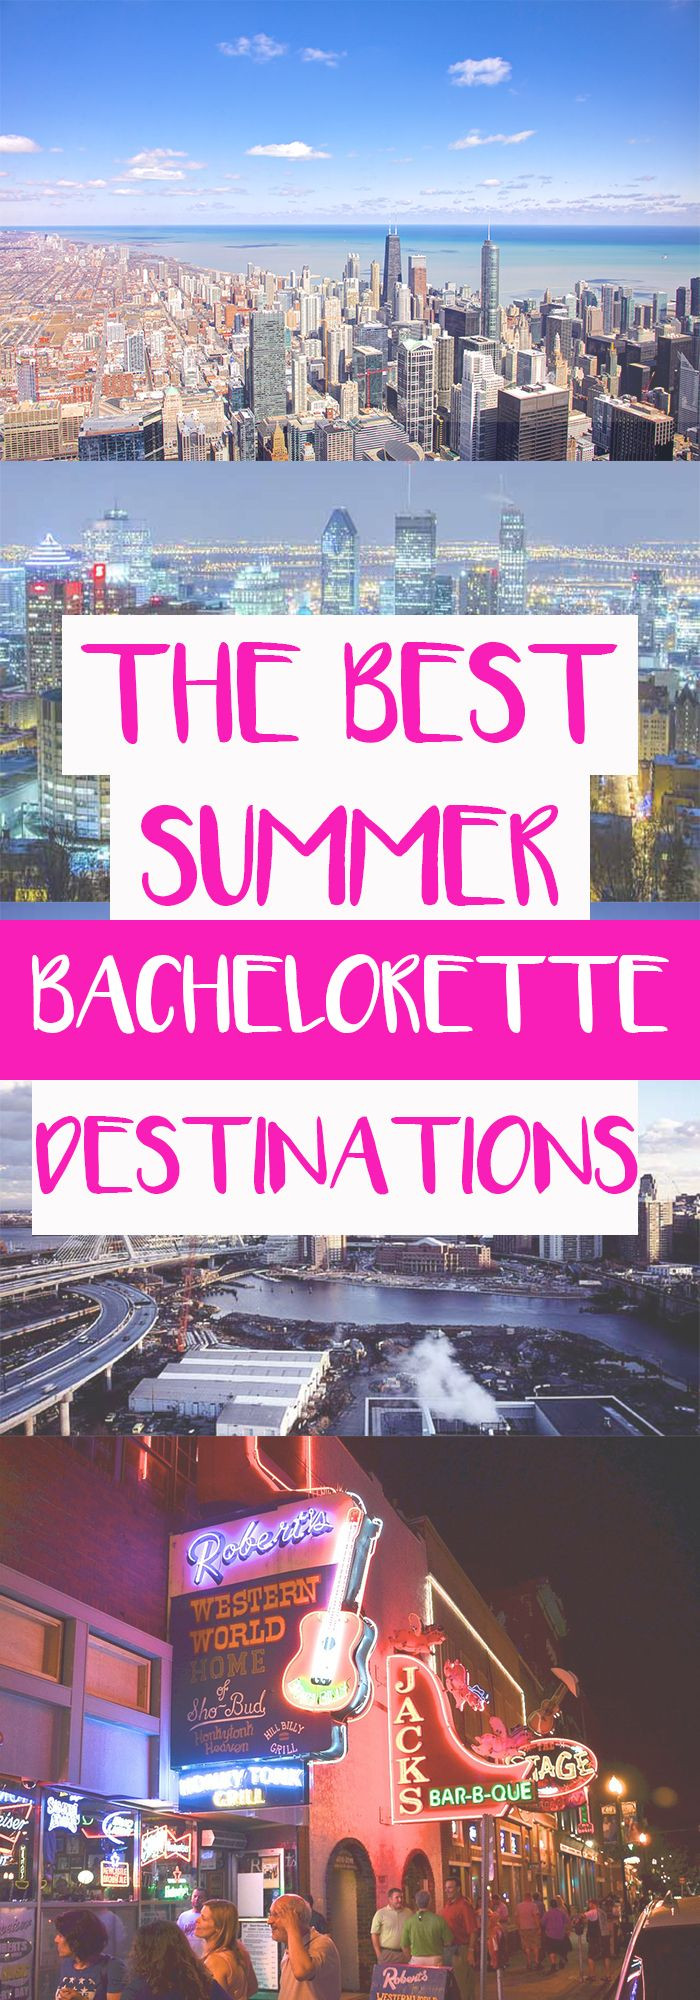 Destination Beach Themed Bachelorette Party Ideas
 Four Best Summer Bachelorette Destinations